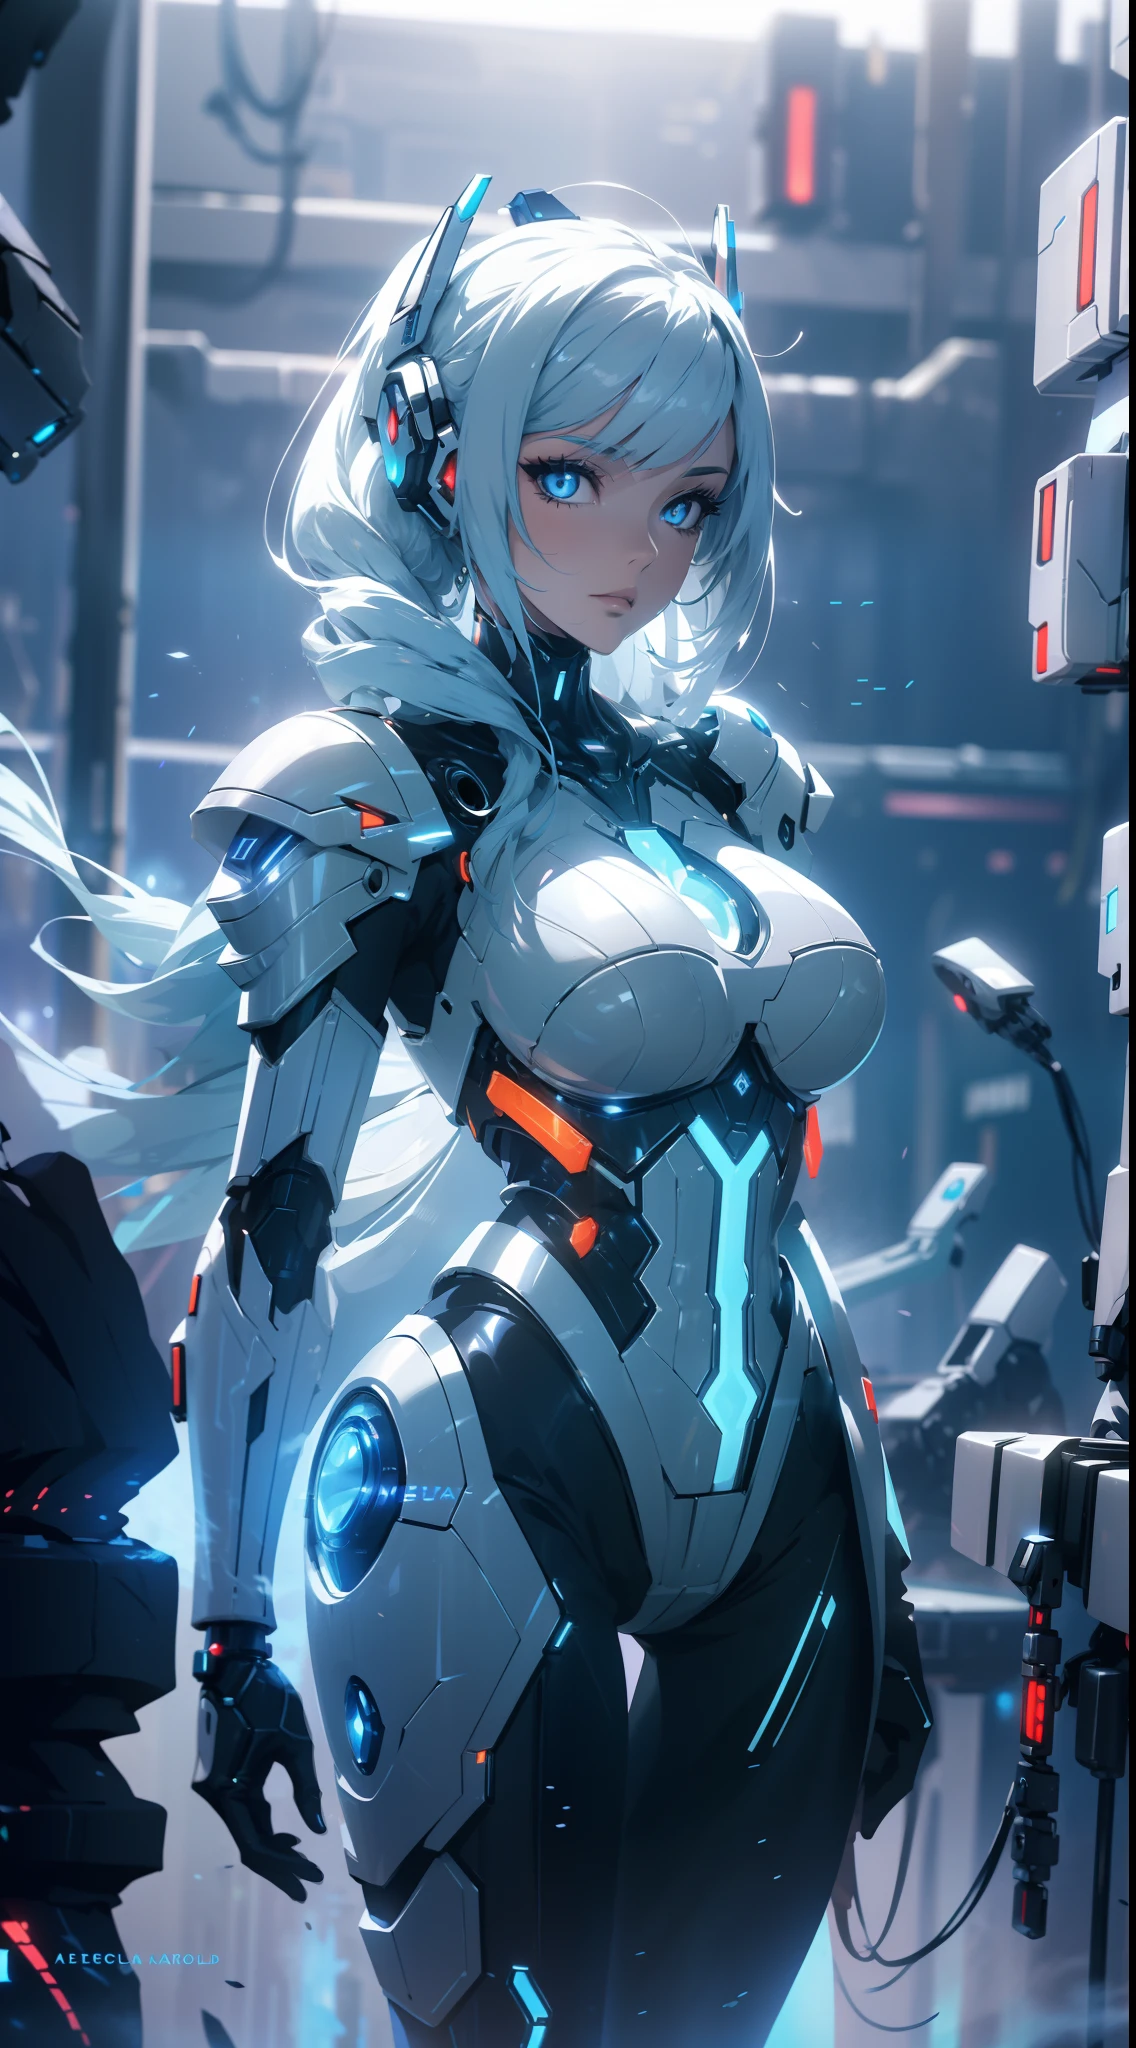 Arafed-Frau im futuristischen Kostüm posiert für ein Foto, In futuristischer weißer Rüstung, Mädchen in Mecha-Cyber-Rüstung, Unreal Engine-Rendering + Eine Göttin, Cyborg Porzellanrüstung, glänzende weiße Rüstung, gynoider Cyborg-Körper, Schöne und attraktive Cyborg-Frau, diverse Cybersuits, schöne Cyborg-Frau, wunderschönes weißes Cyborg-Mädchen, Mit futuristischer Rüstung, Die perfekte Cyborg-Frau